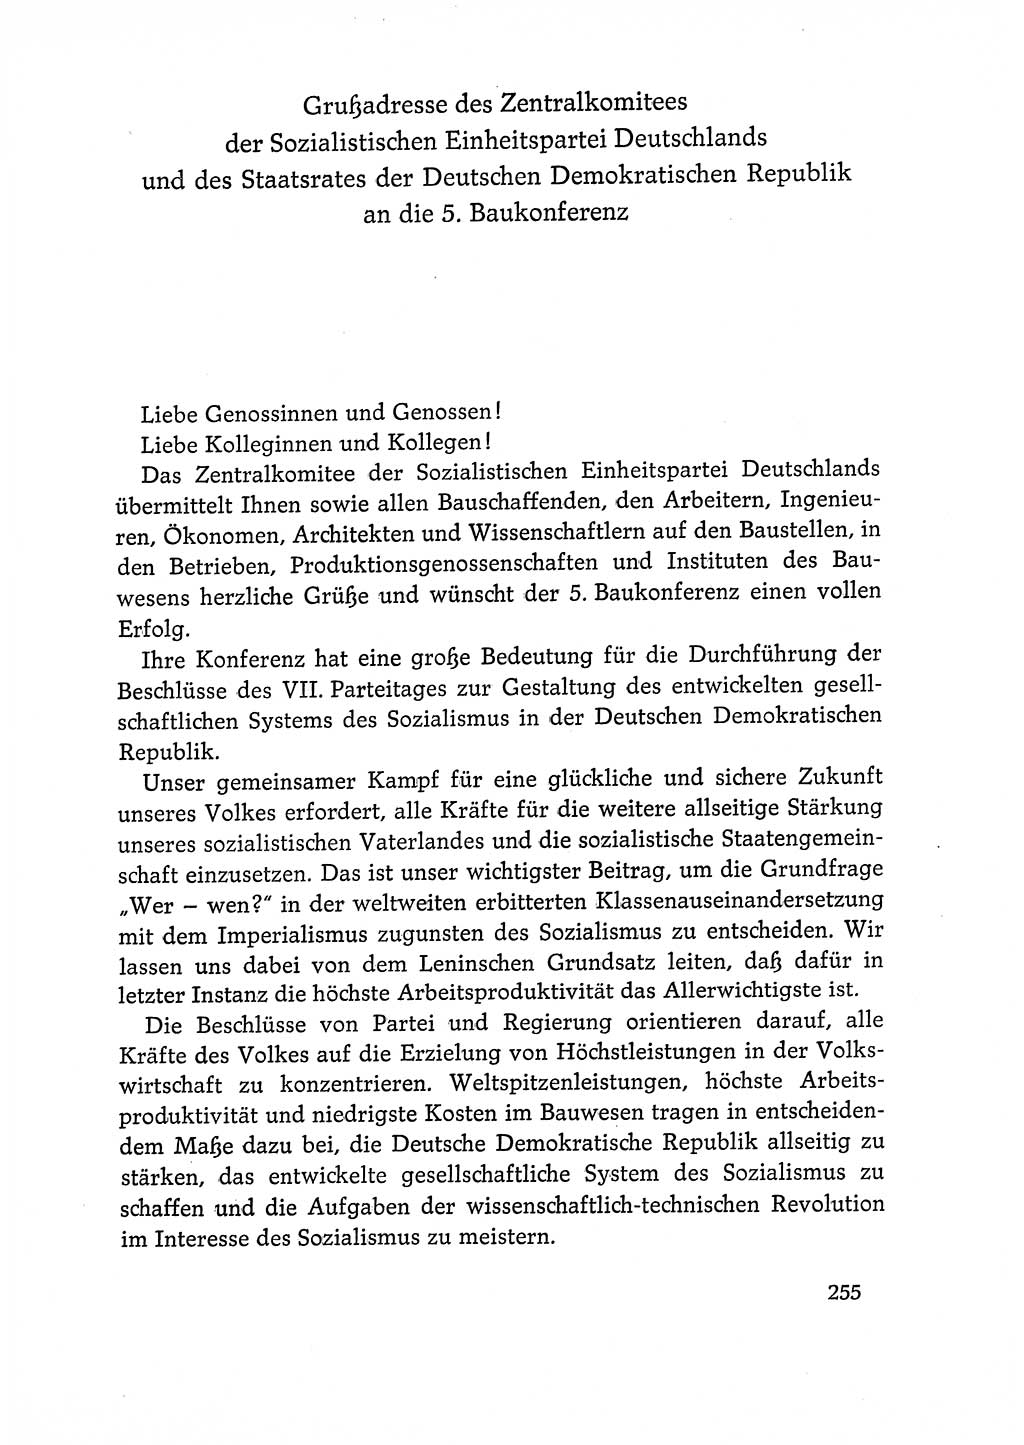 Dokumente der Sozialistischen Einheitspartei Deutschlands (SED) [Deutsche Demokratische Republik (DDR)] 1968-1969, Seite 255 (Dok. SED DDR 1968-1969, S. 255)